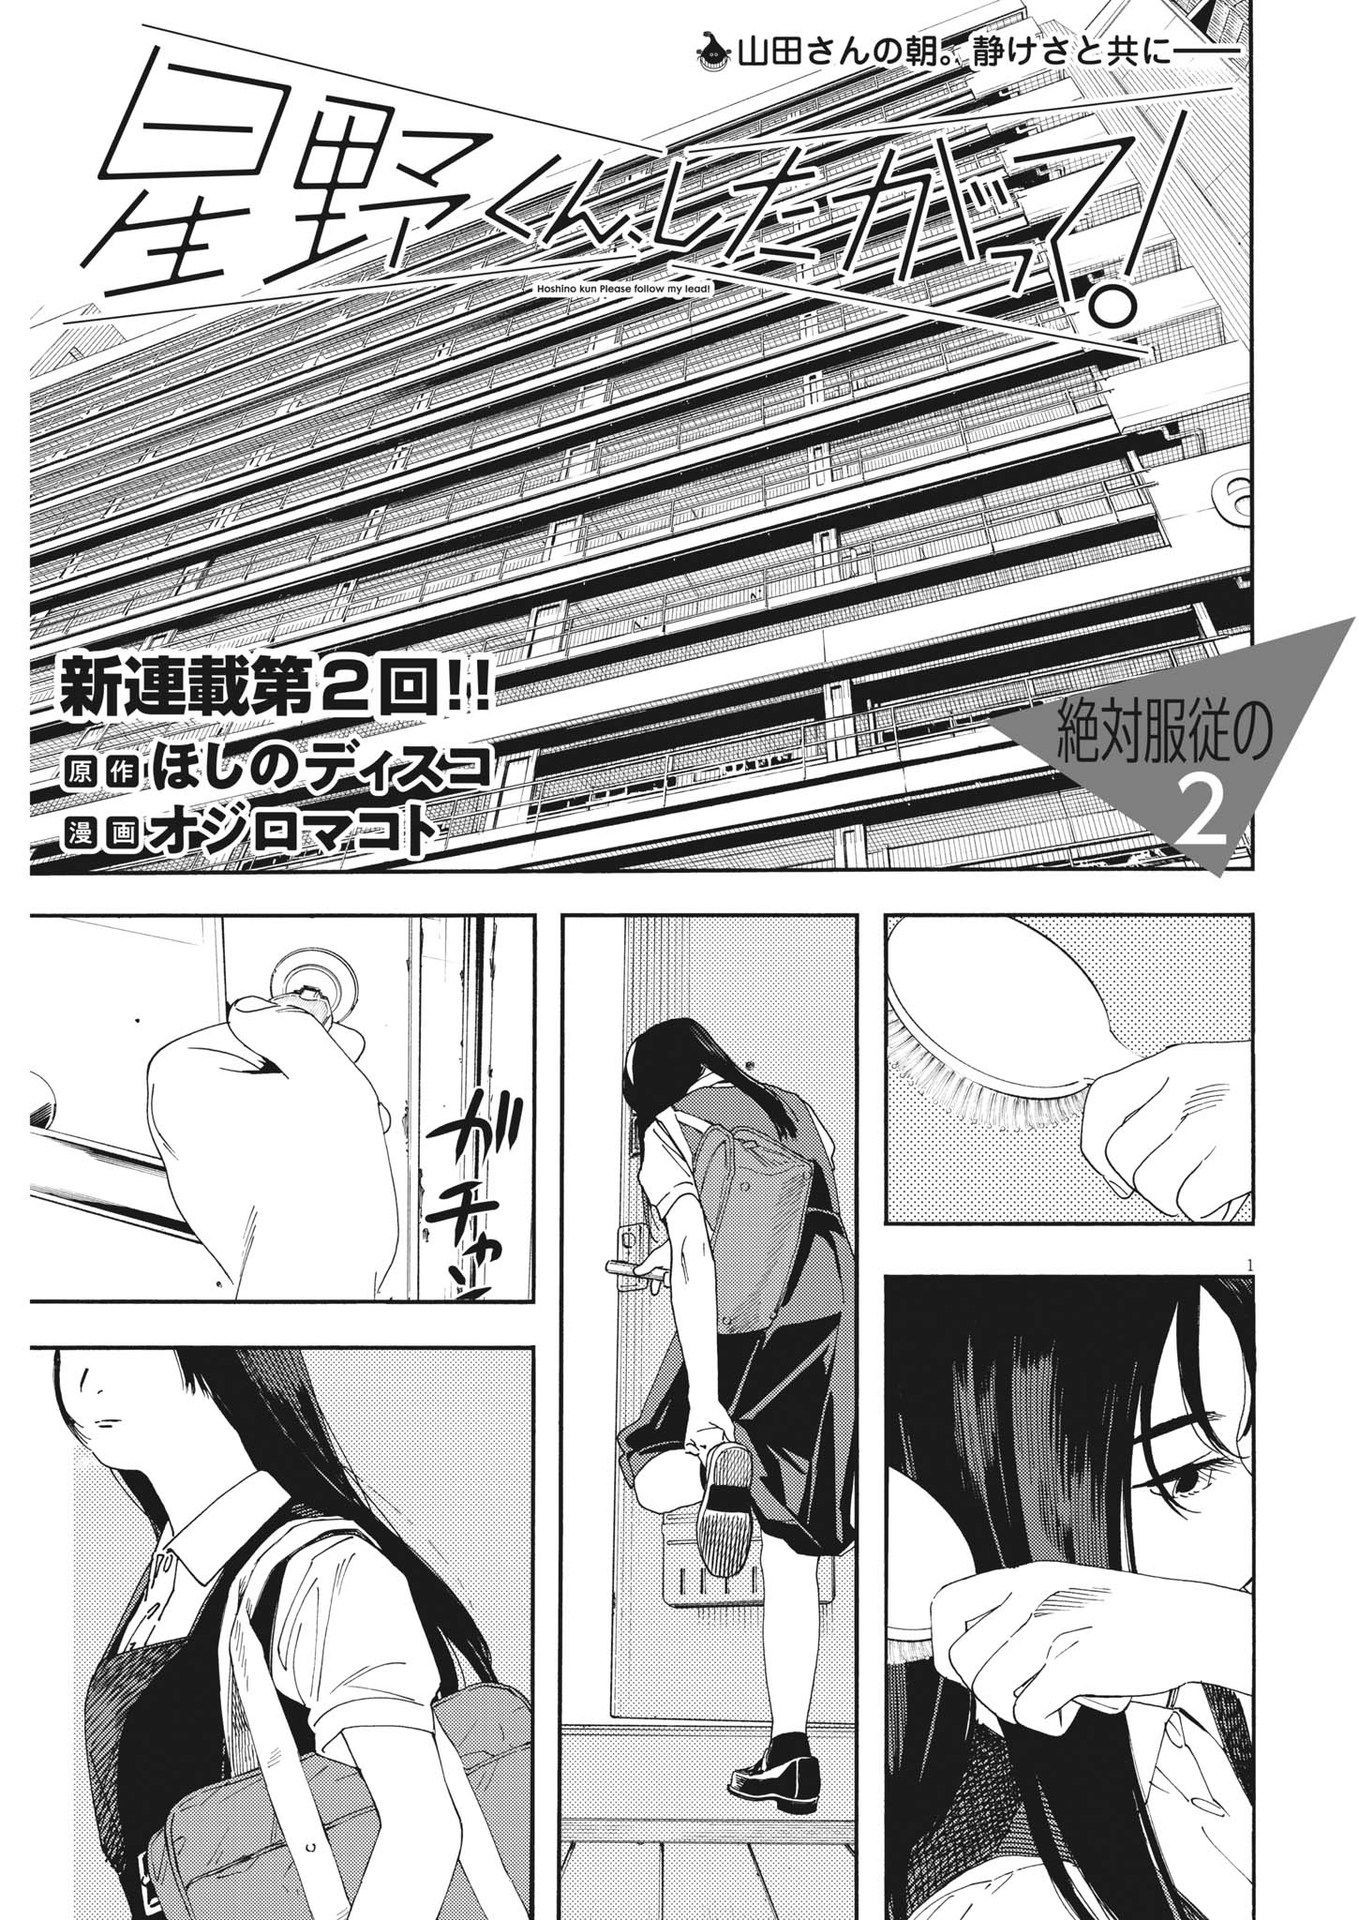 Hoshino-kun, Shitagatte! - Chapter 2 - Page 1